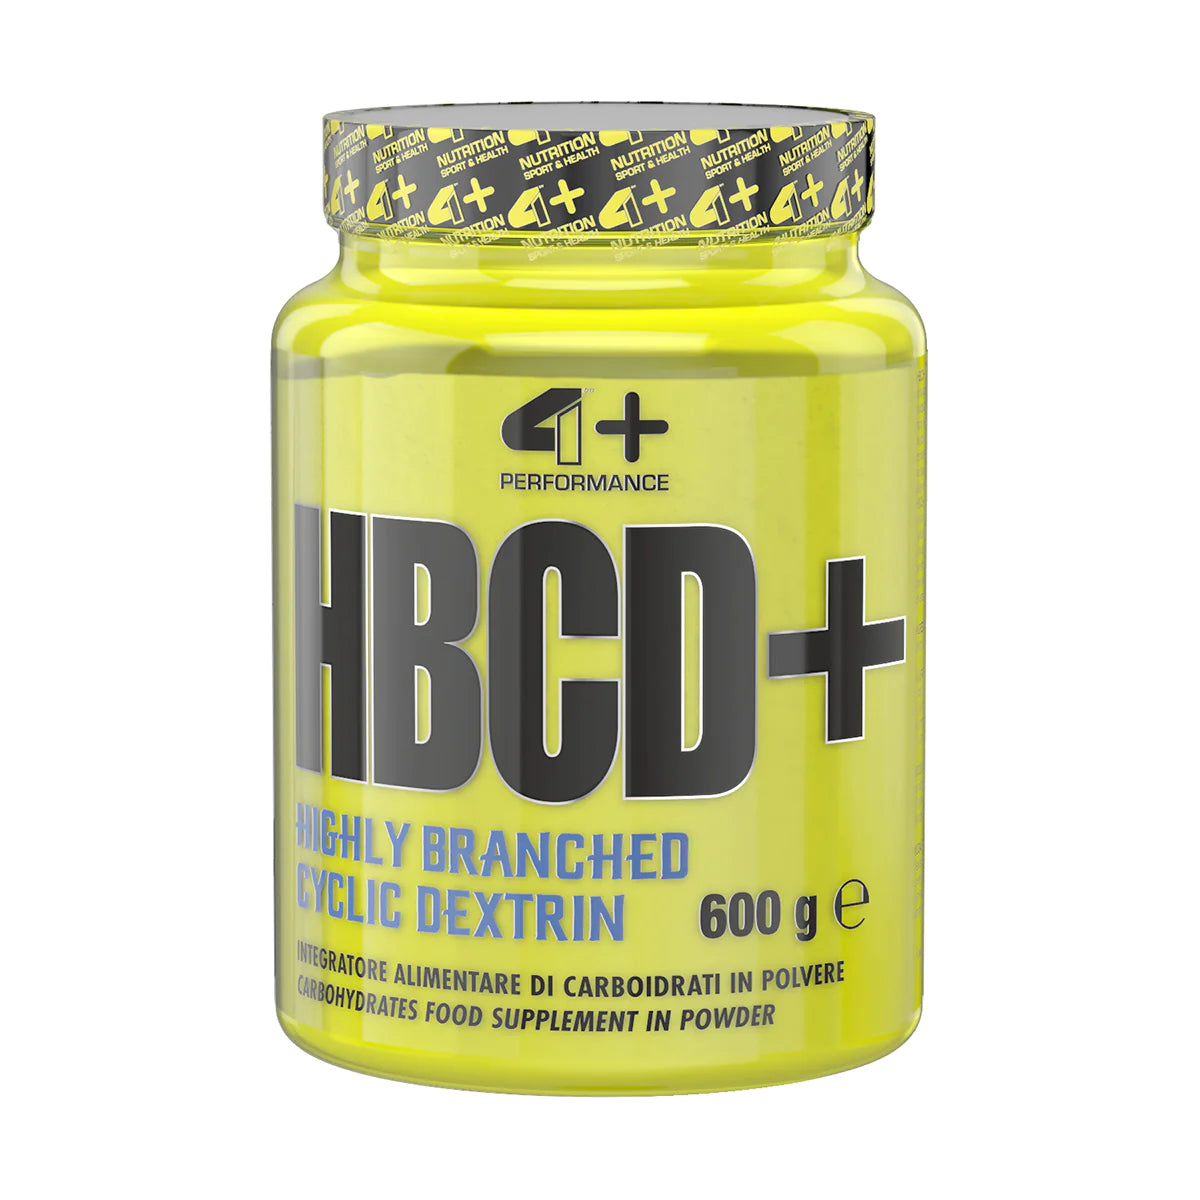 4+ HBCD + Nutrition